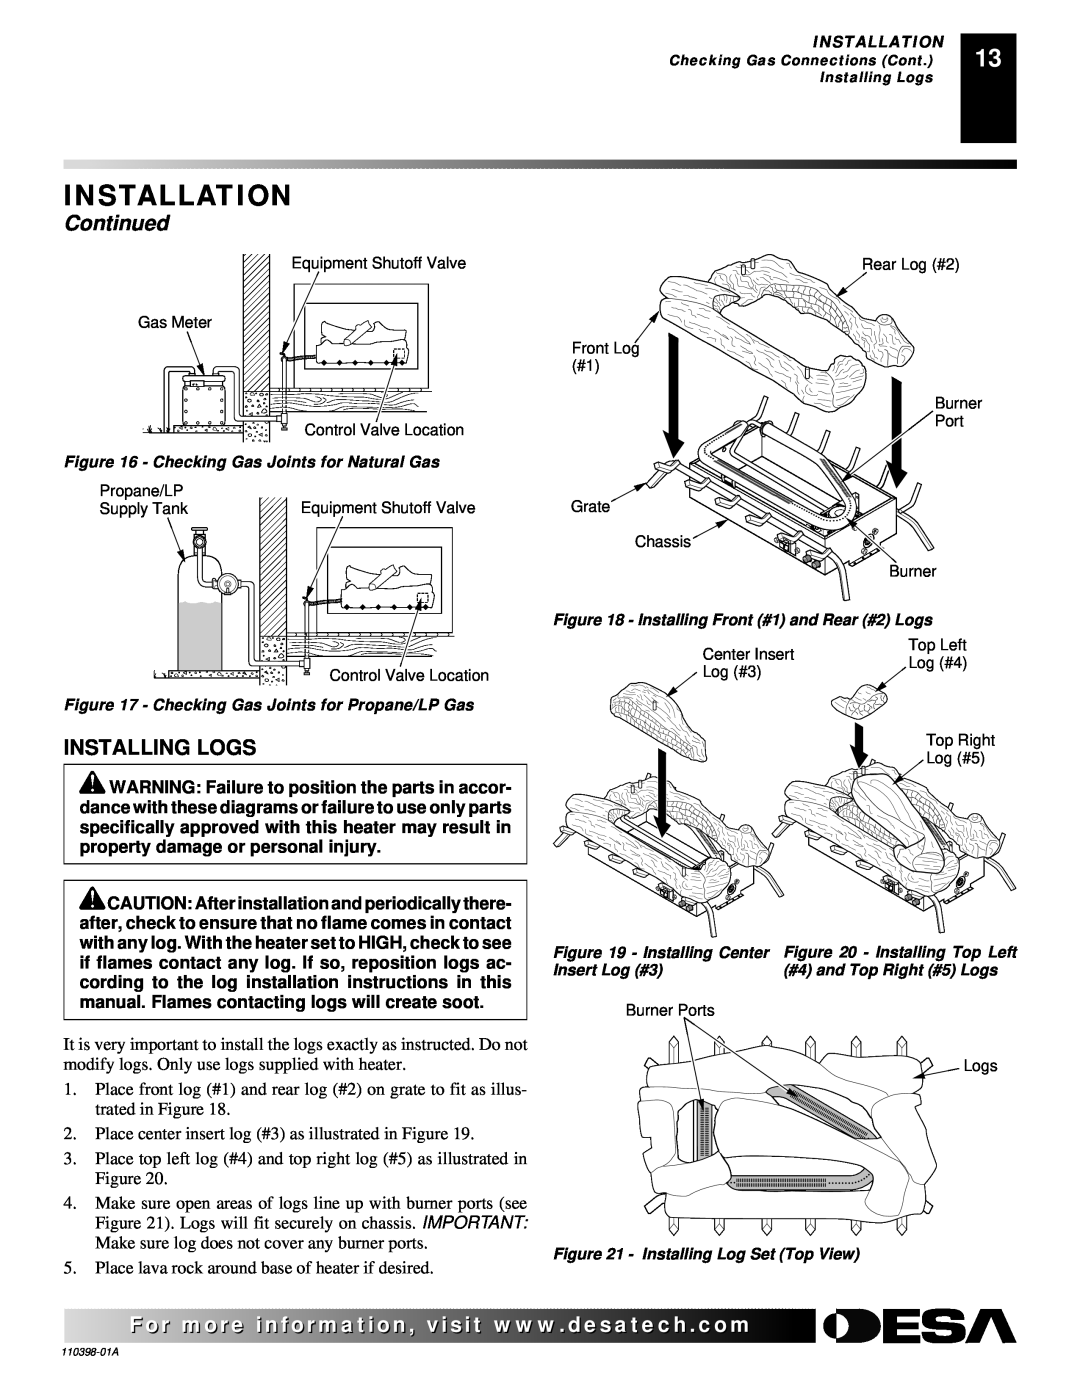 Desa VYM27NRPR installation manual Installation, Continued, Installing Logs 